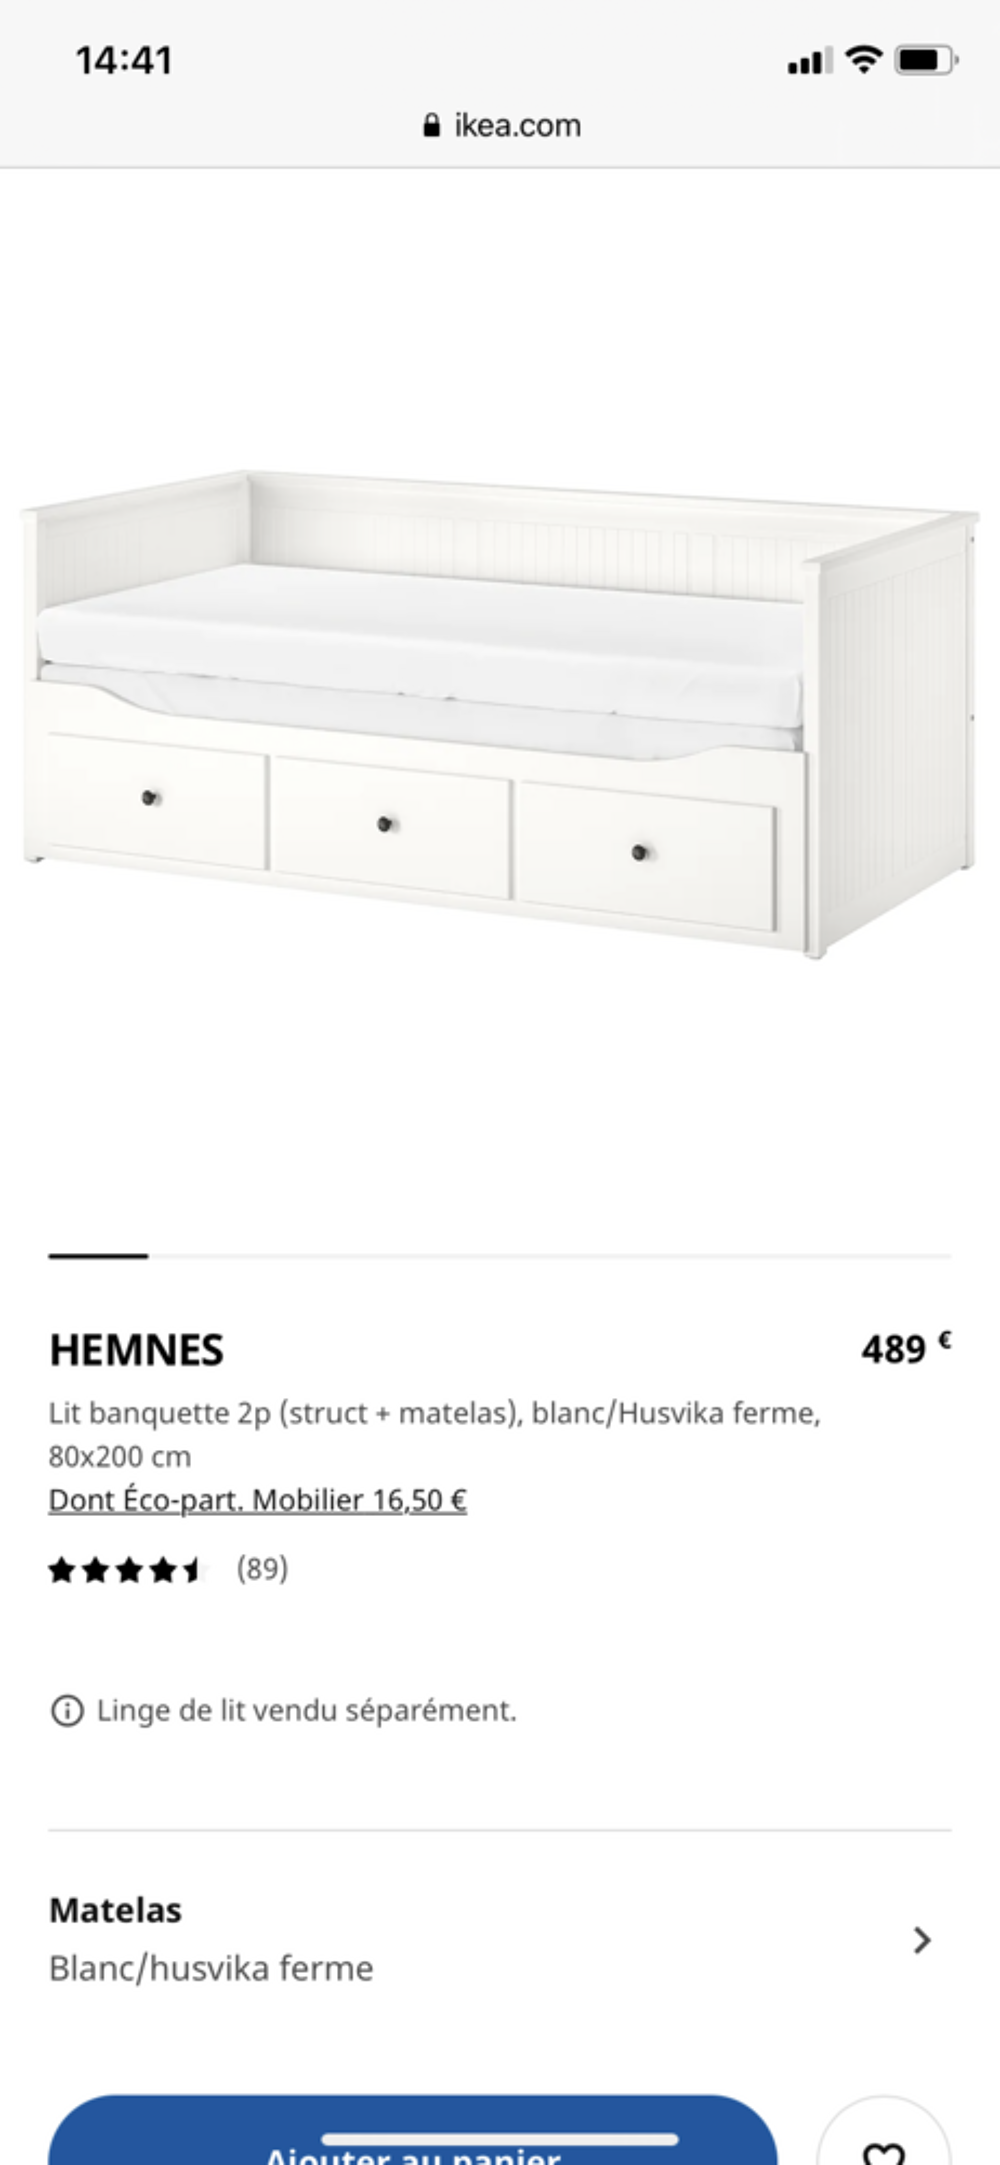 Banquette lit (matelas + structures) IKEA Meubles